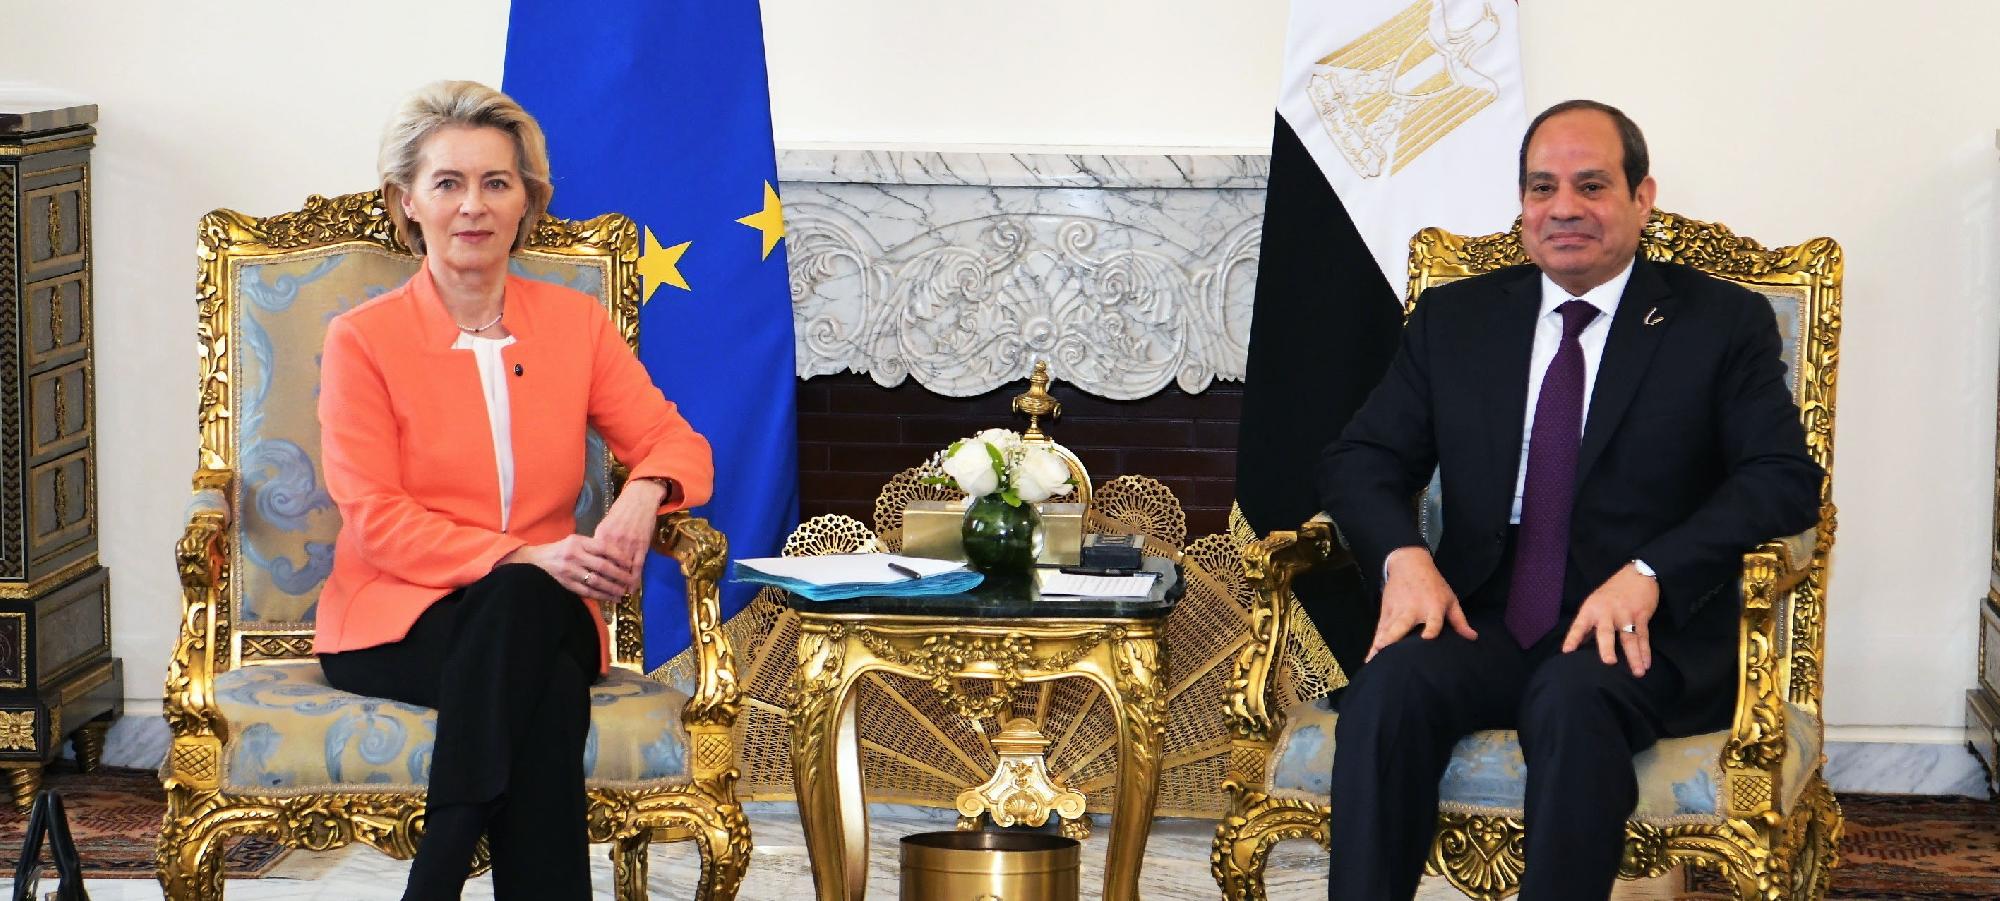 Az EU stratégiai megállapodást kötött Egyiptommal